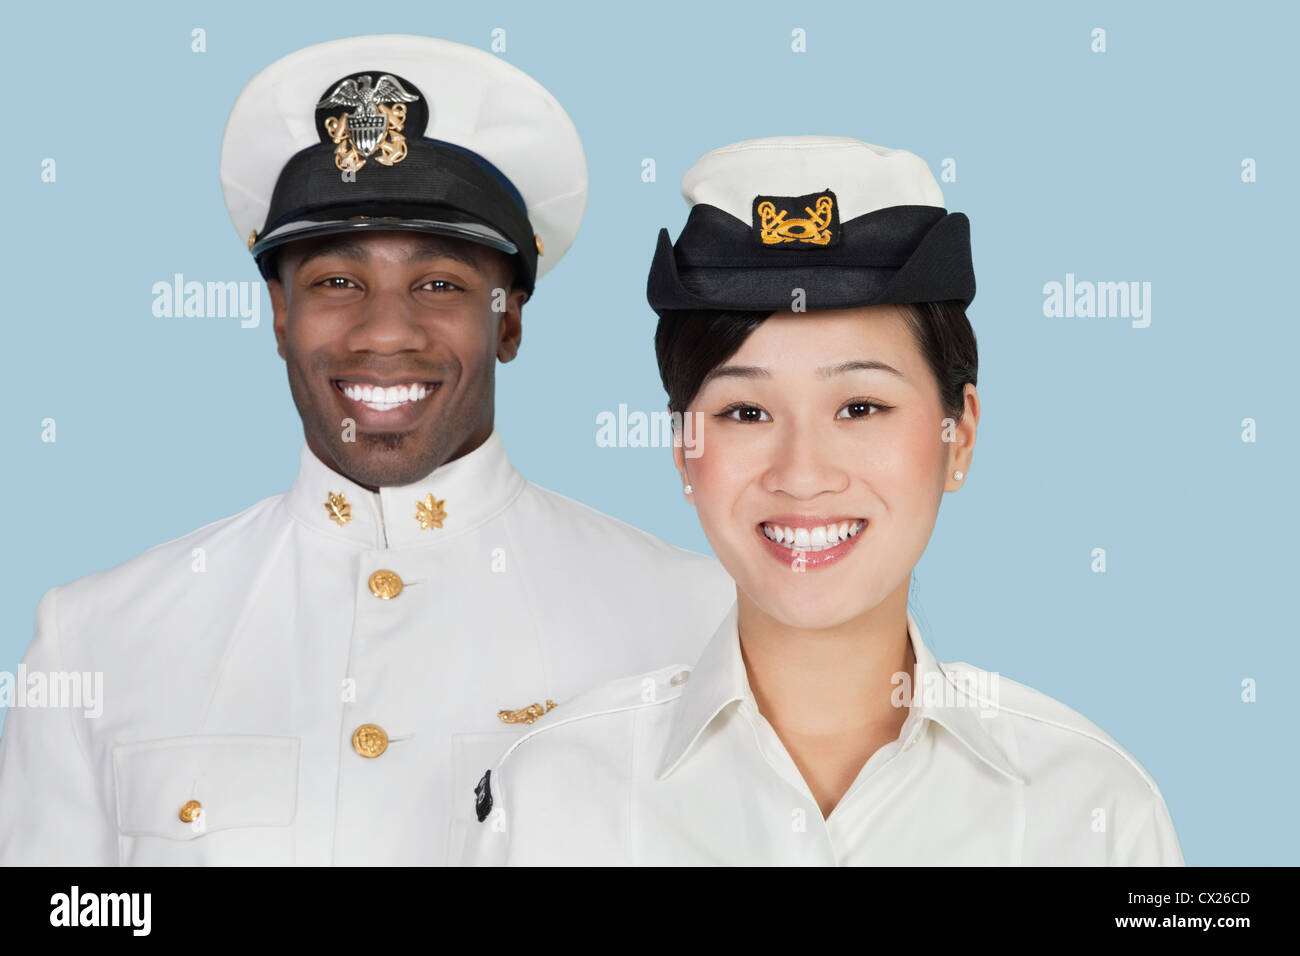 Man-nous de la Marine smiling over light blue background Banque D'Images